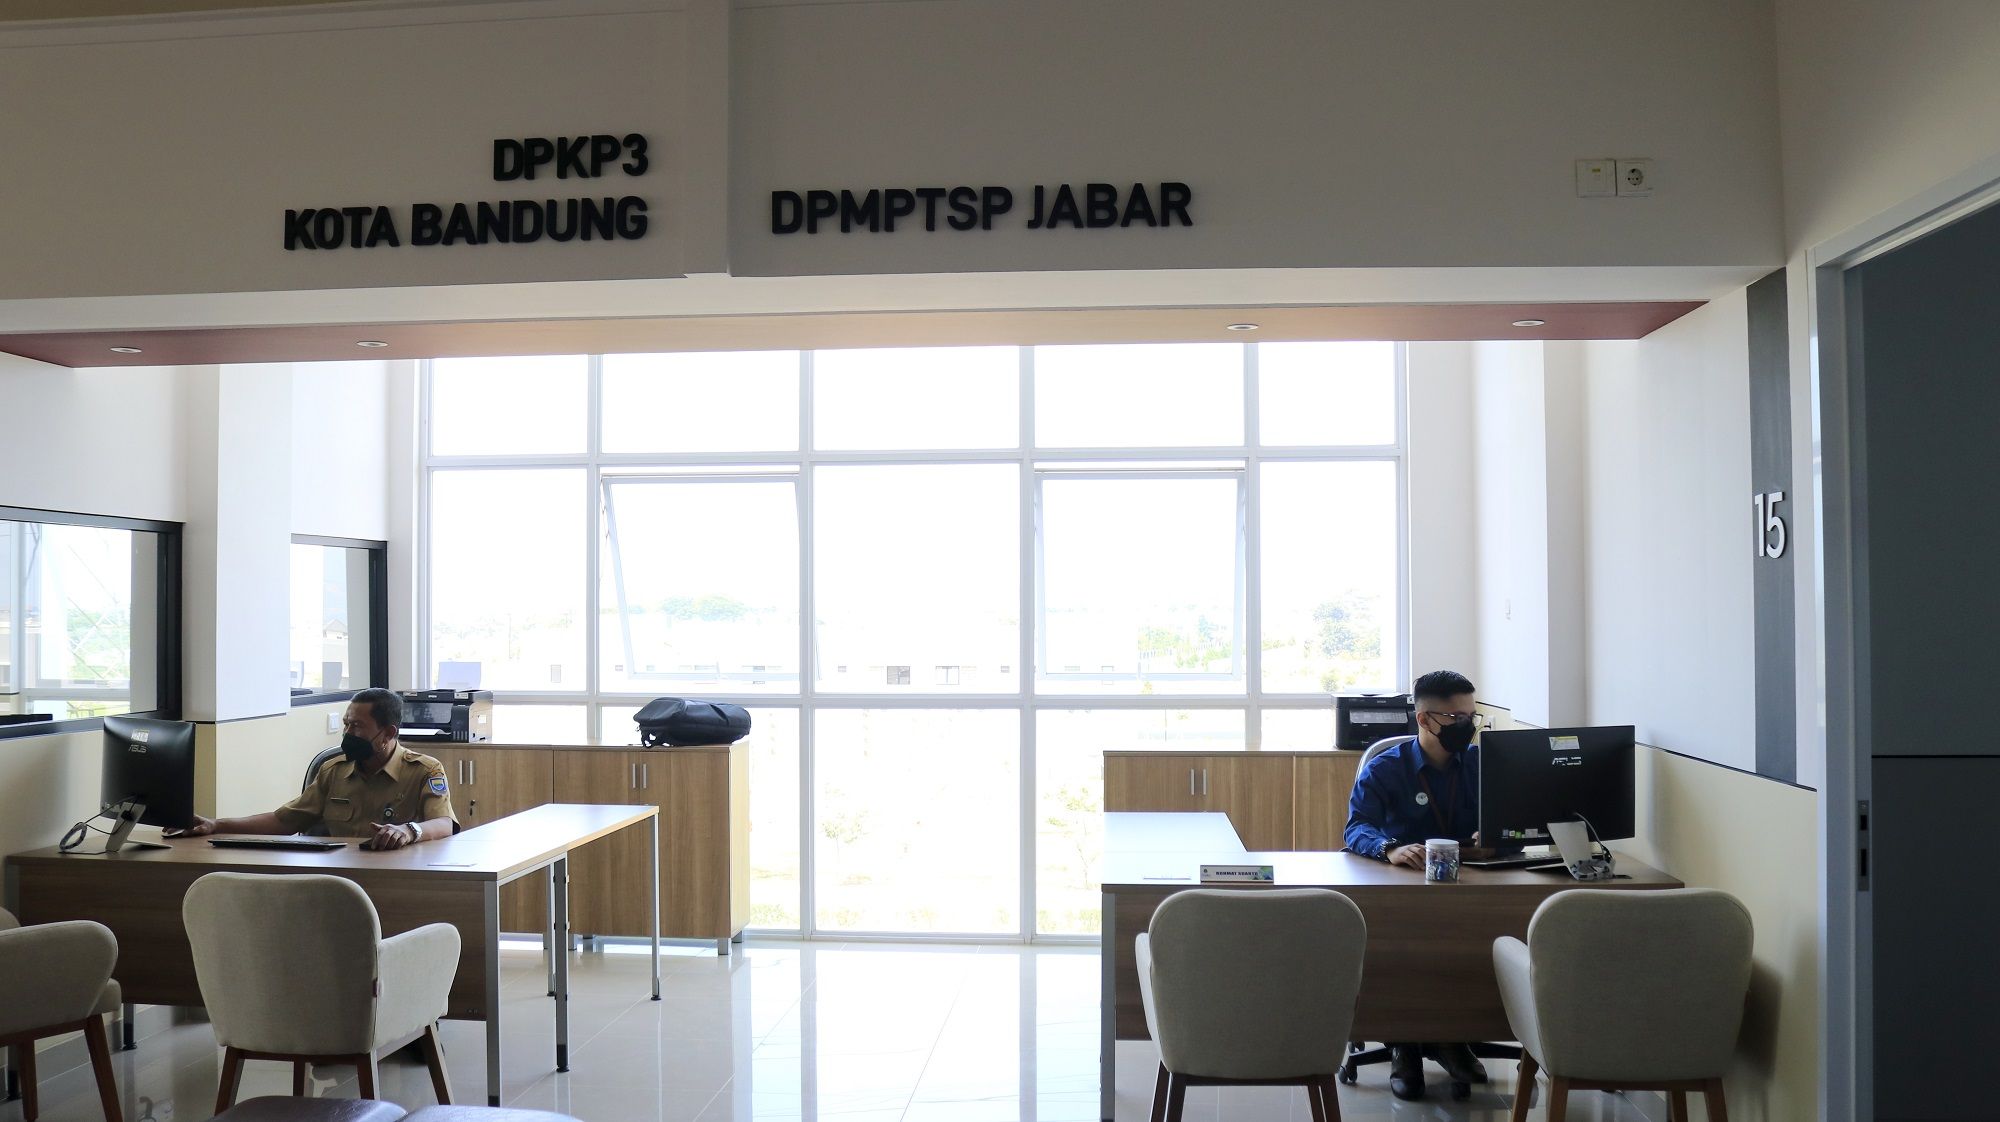 Gerai Pelayanan Publik Summarecon Bandung memiliki 16 instansi pelayanan yang tersebar pada tiga lantai dan didukung dengan penggunaan teknologi informasi. Jenis pelayanan yang dihadirkan mulai dari layanan administratif, jasa, dan tersedia juga pojok UMKM.